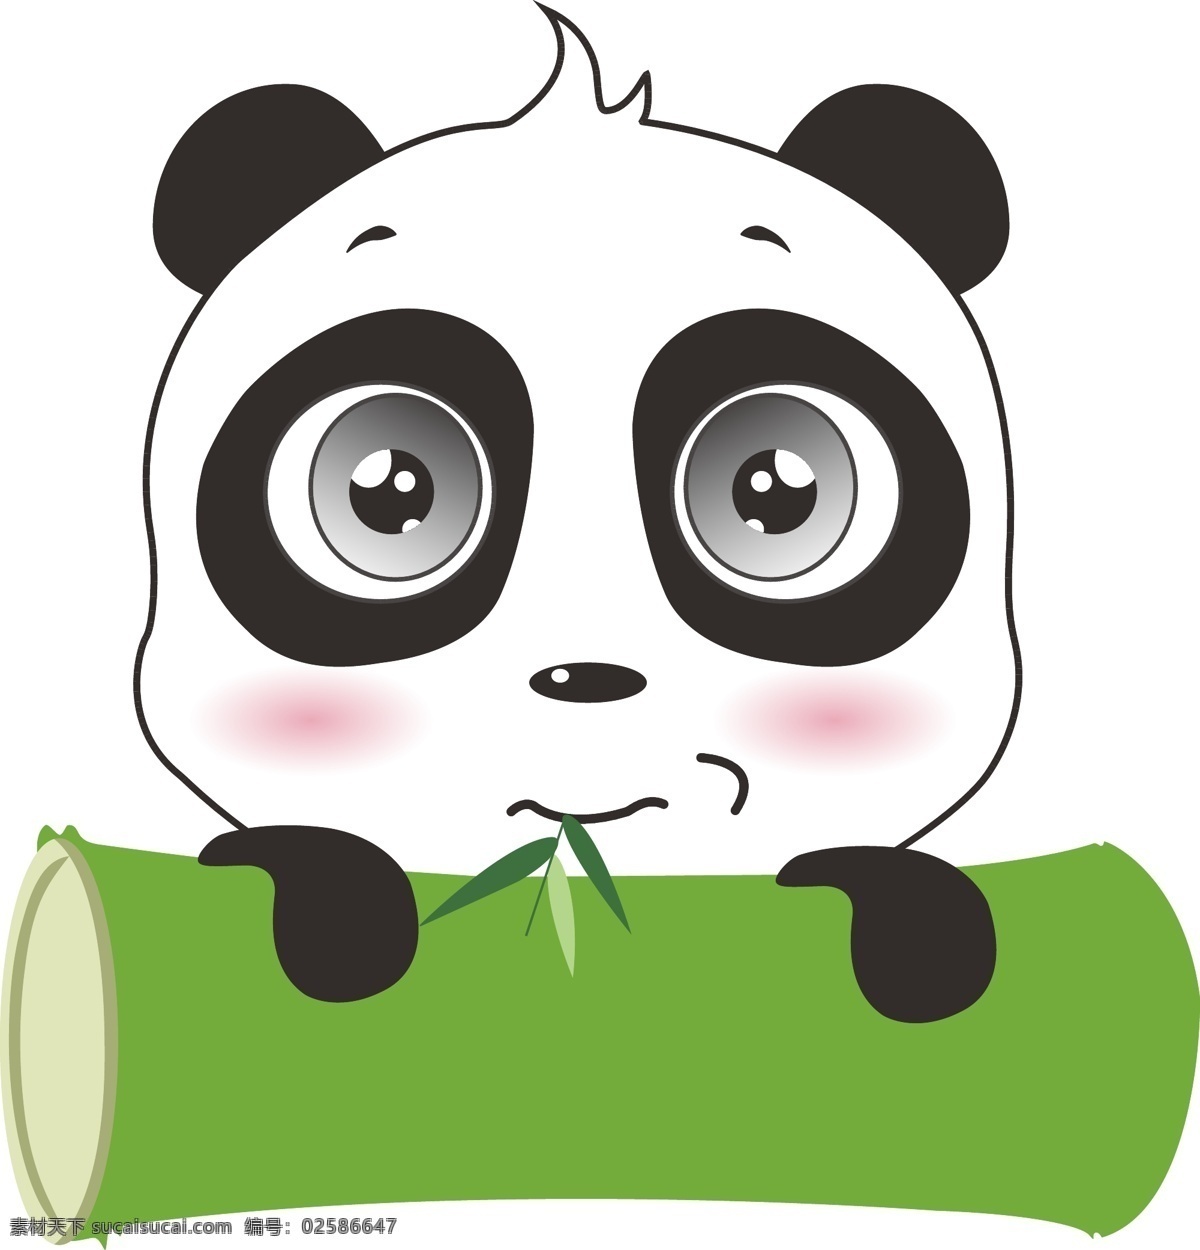 矢量卡通熊猫 熊猫 卡通 竹子 动物 可爱 动漫动画 动漫人物